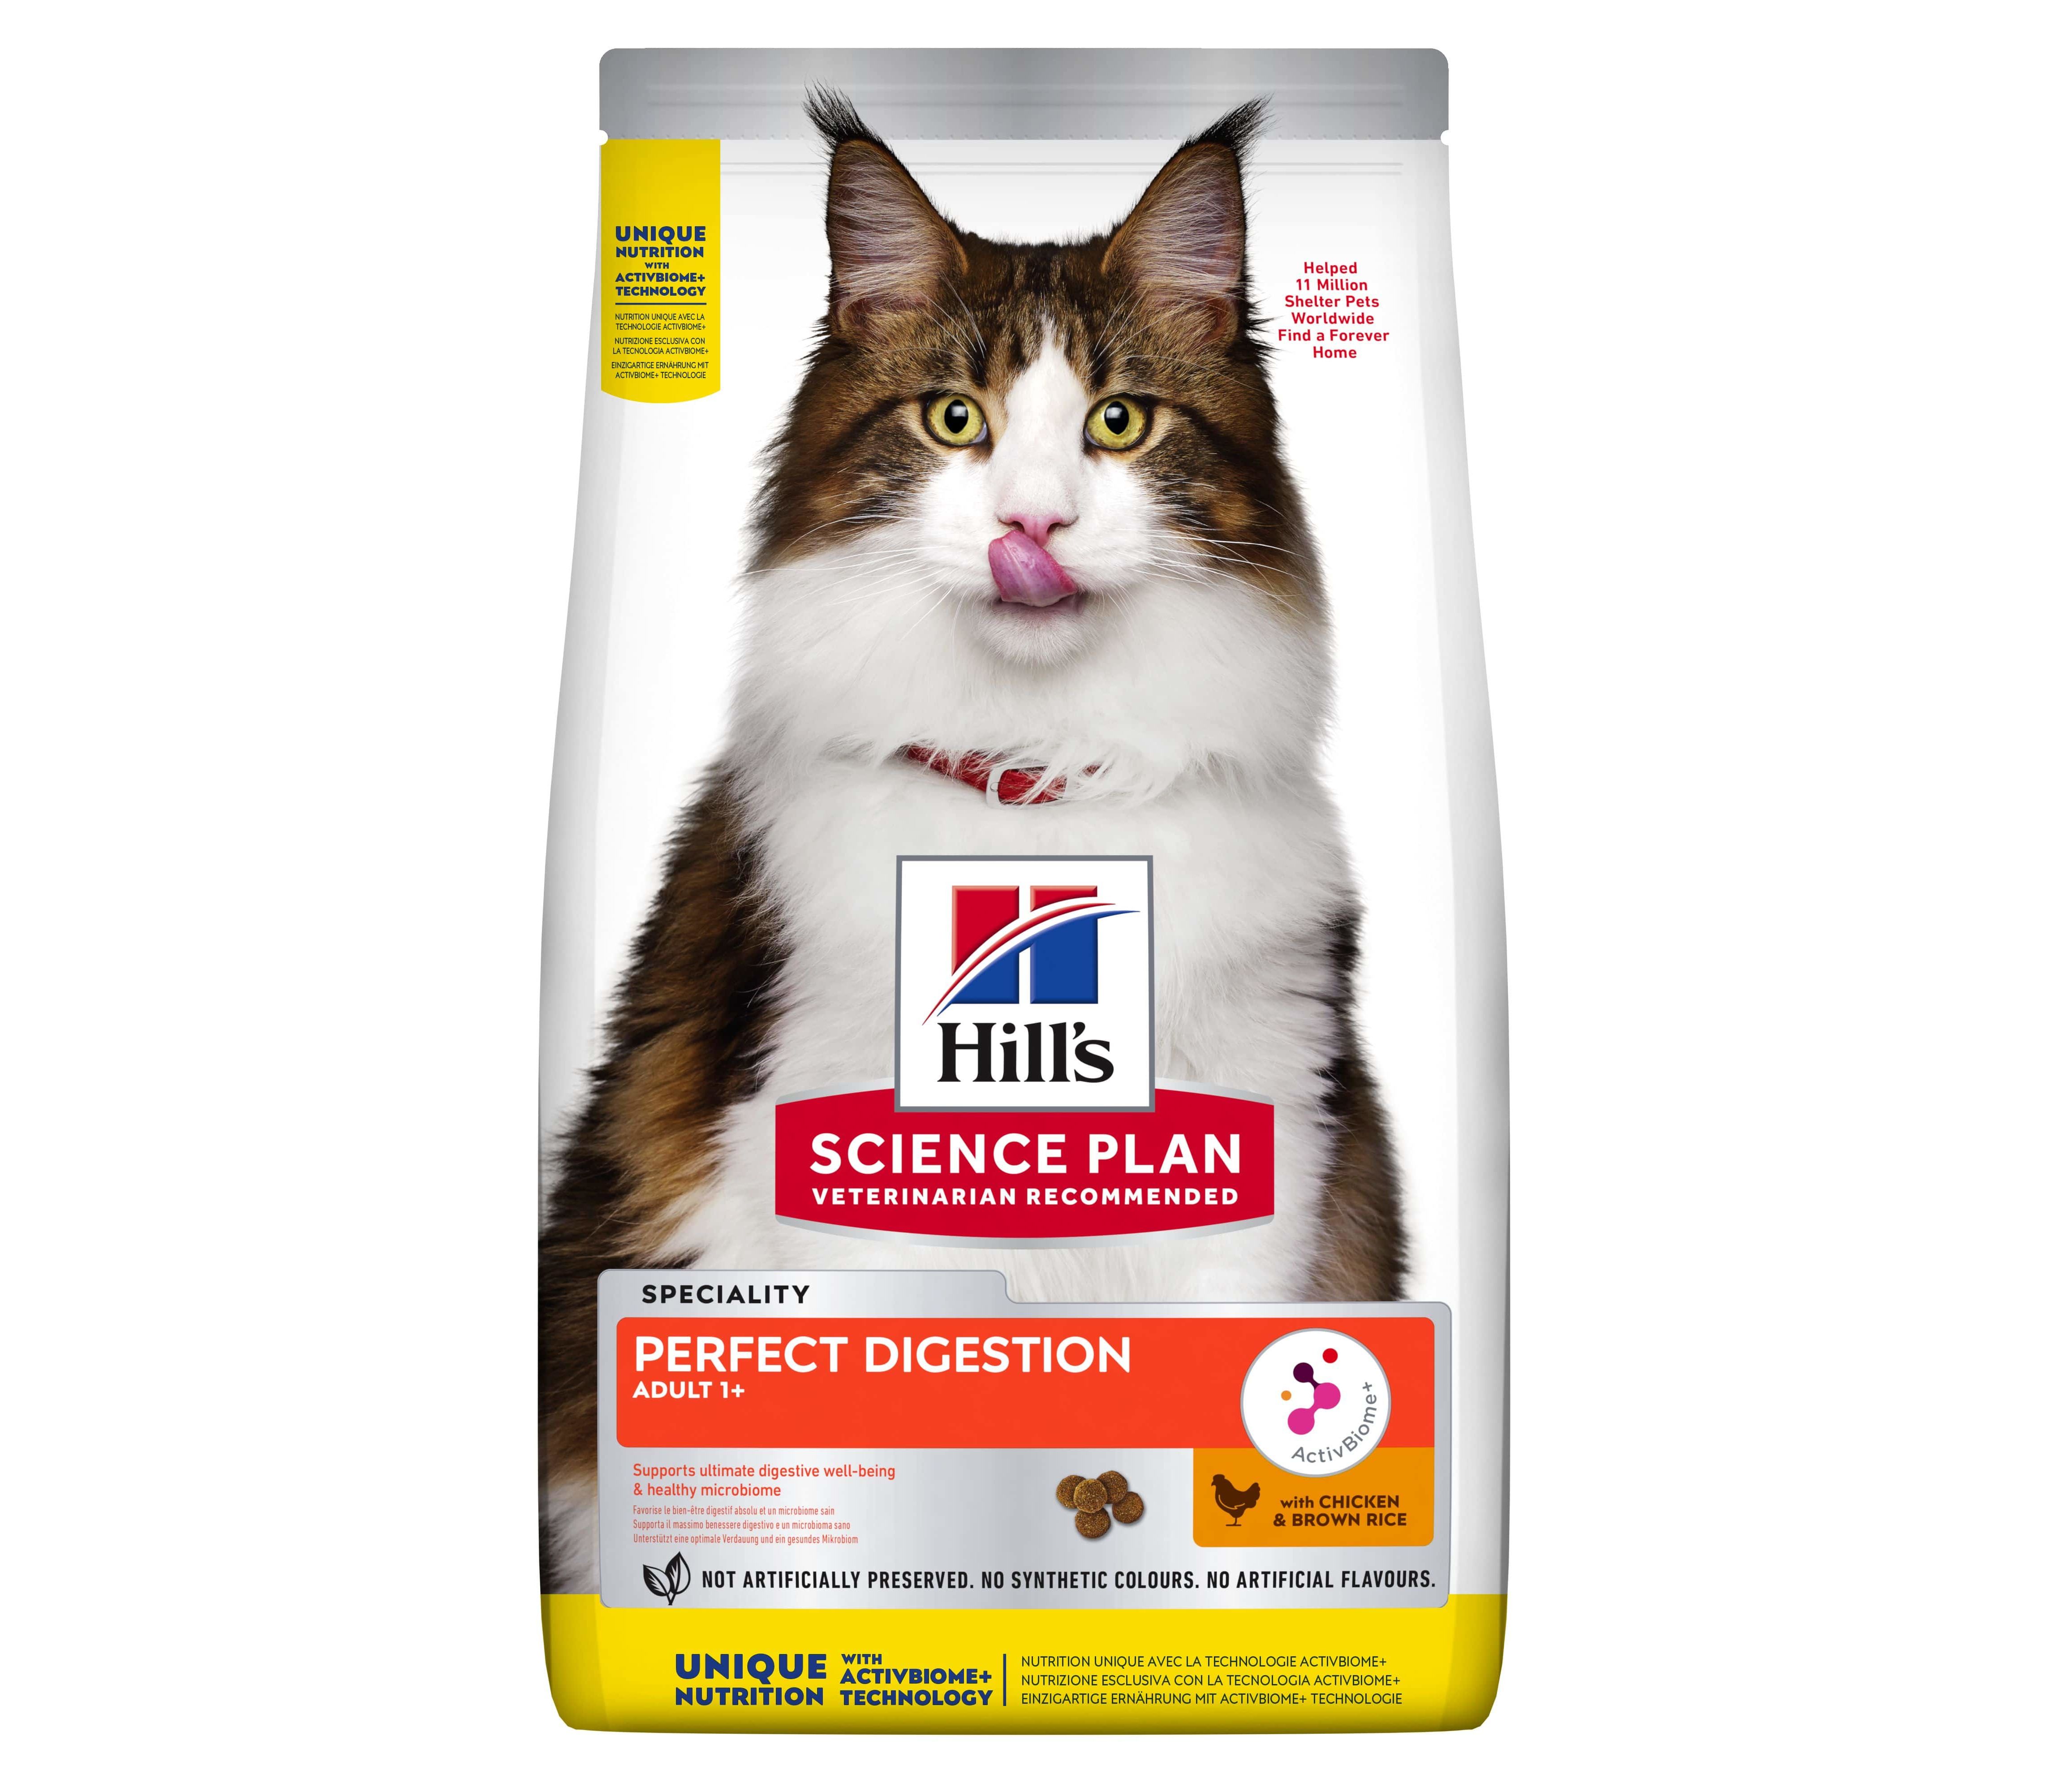 Хиллс с курицей для кошек. Сухой корм Hill's Science Plan perfect digestion для взрослых кошек. Хиллс ideal digestion для кошек. Хиллс для кошек идеальное пищеварение. Хиллс идеальное пищеварение 1.5.